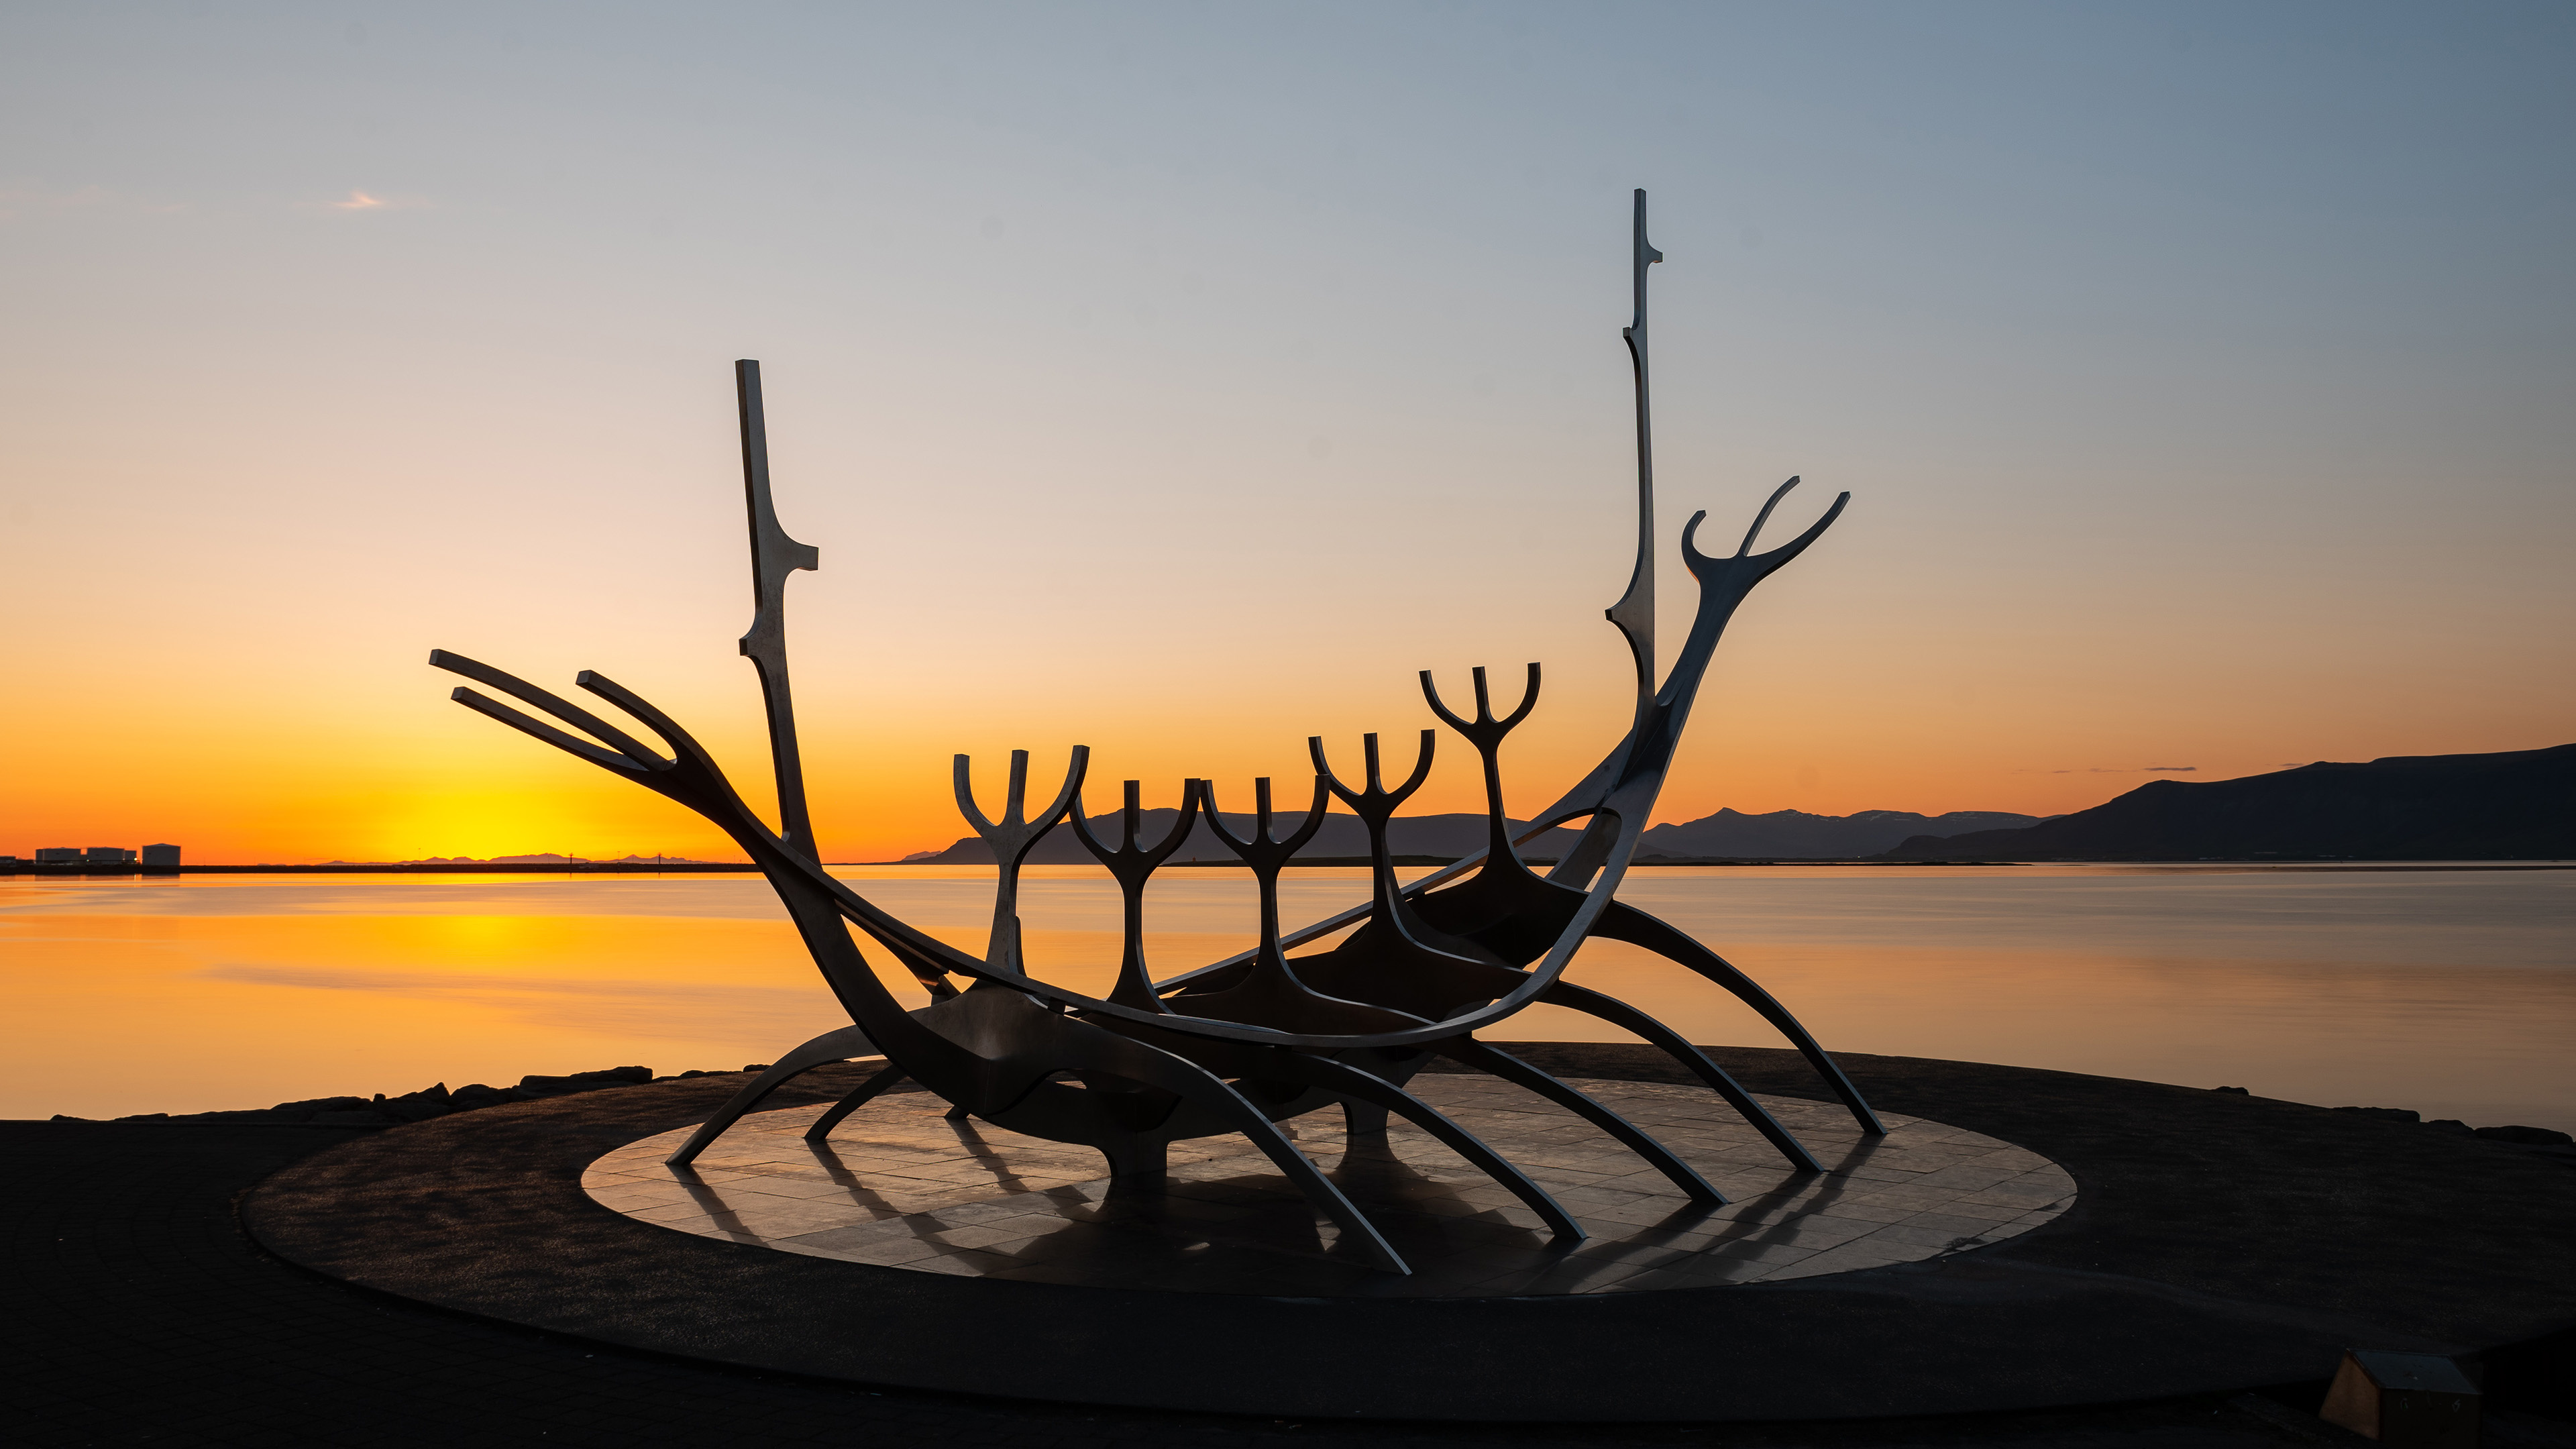 Reykjavik, Sun Voyager sculpture, Iceland's capital, Reykjavik, 3840x2160 4K Desktop